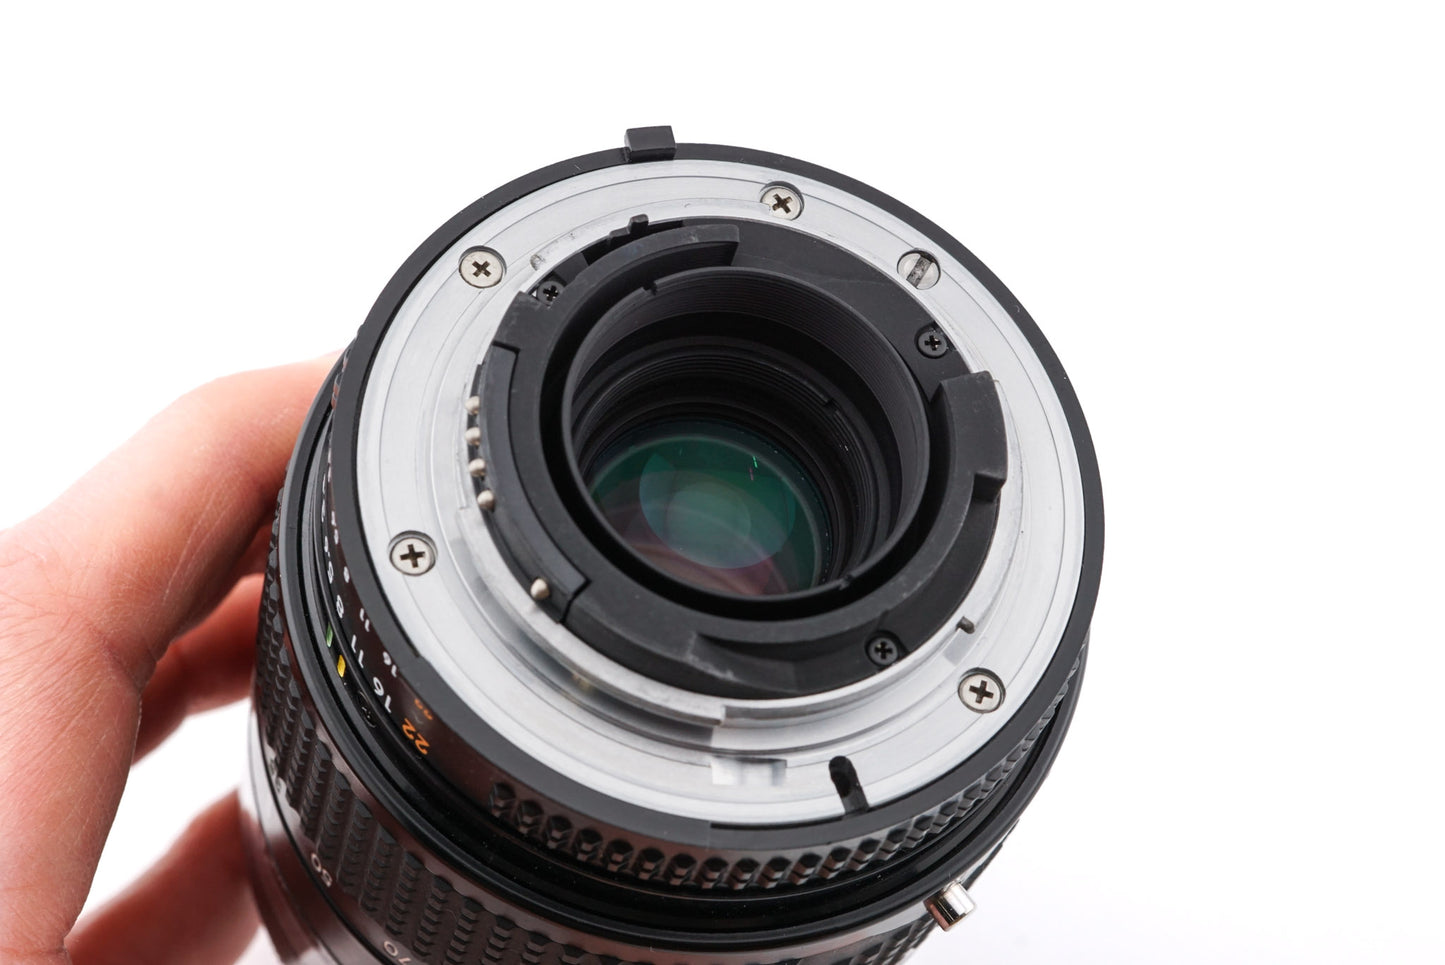 Nikon 35-105mm f3.5-4.5 AF Nikkor